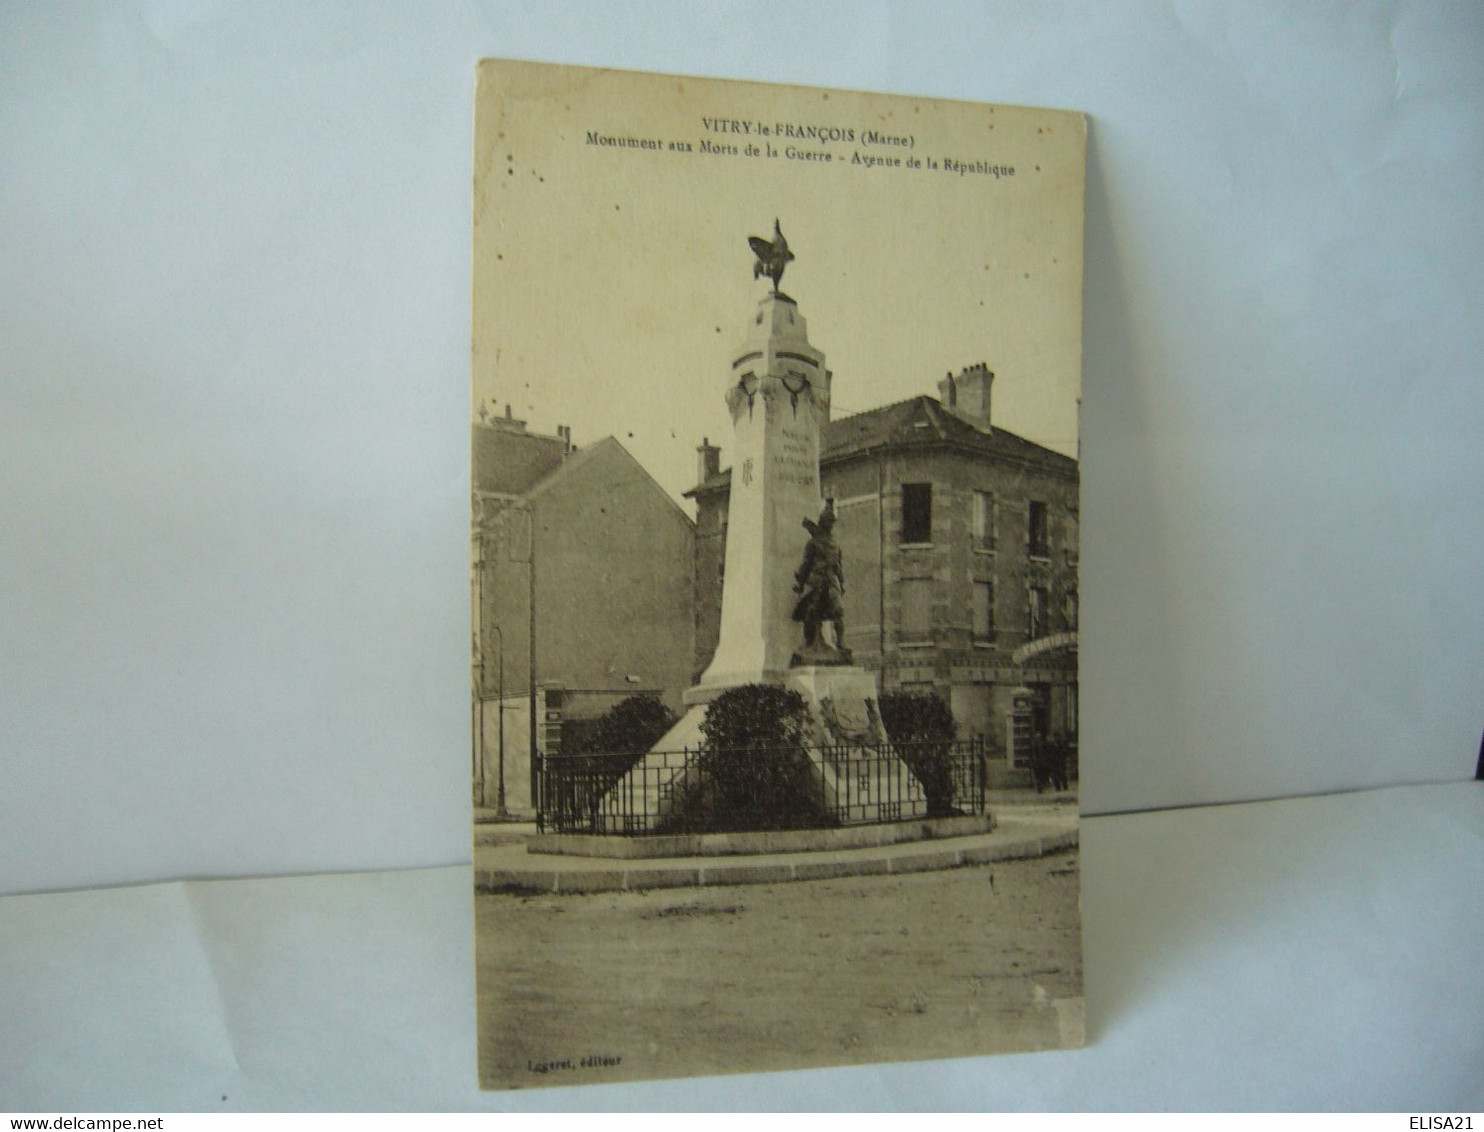 VITRY LE FRANCOIS 51 MARNE MONUMENT AUX MORTS DE LA GUERRE AVENUE DE LA REPUBLIQUE CPA LEGERET EDITEUR - Monuments Aux Morts